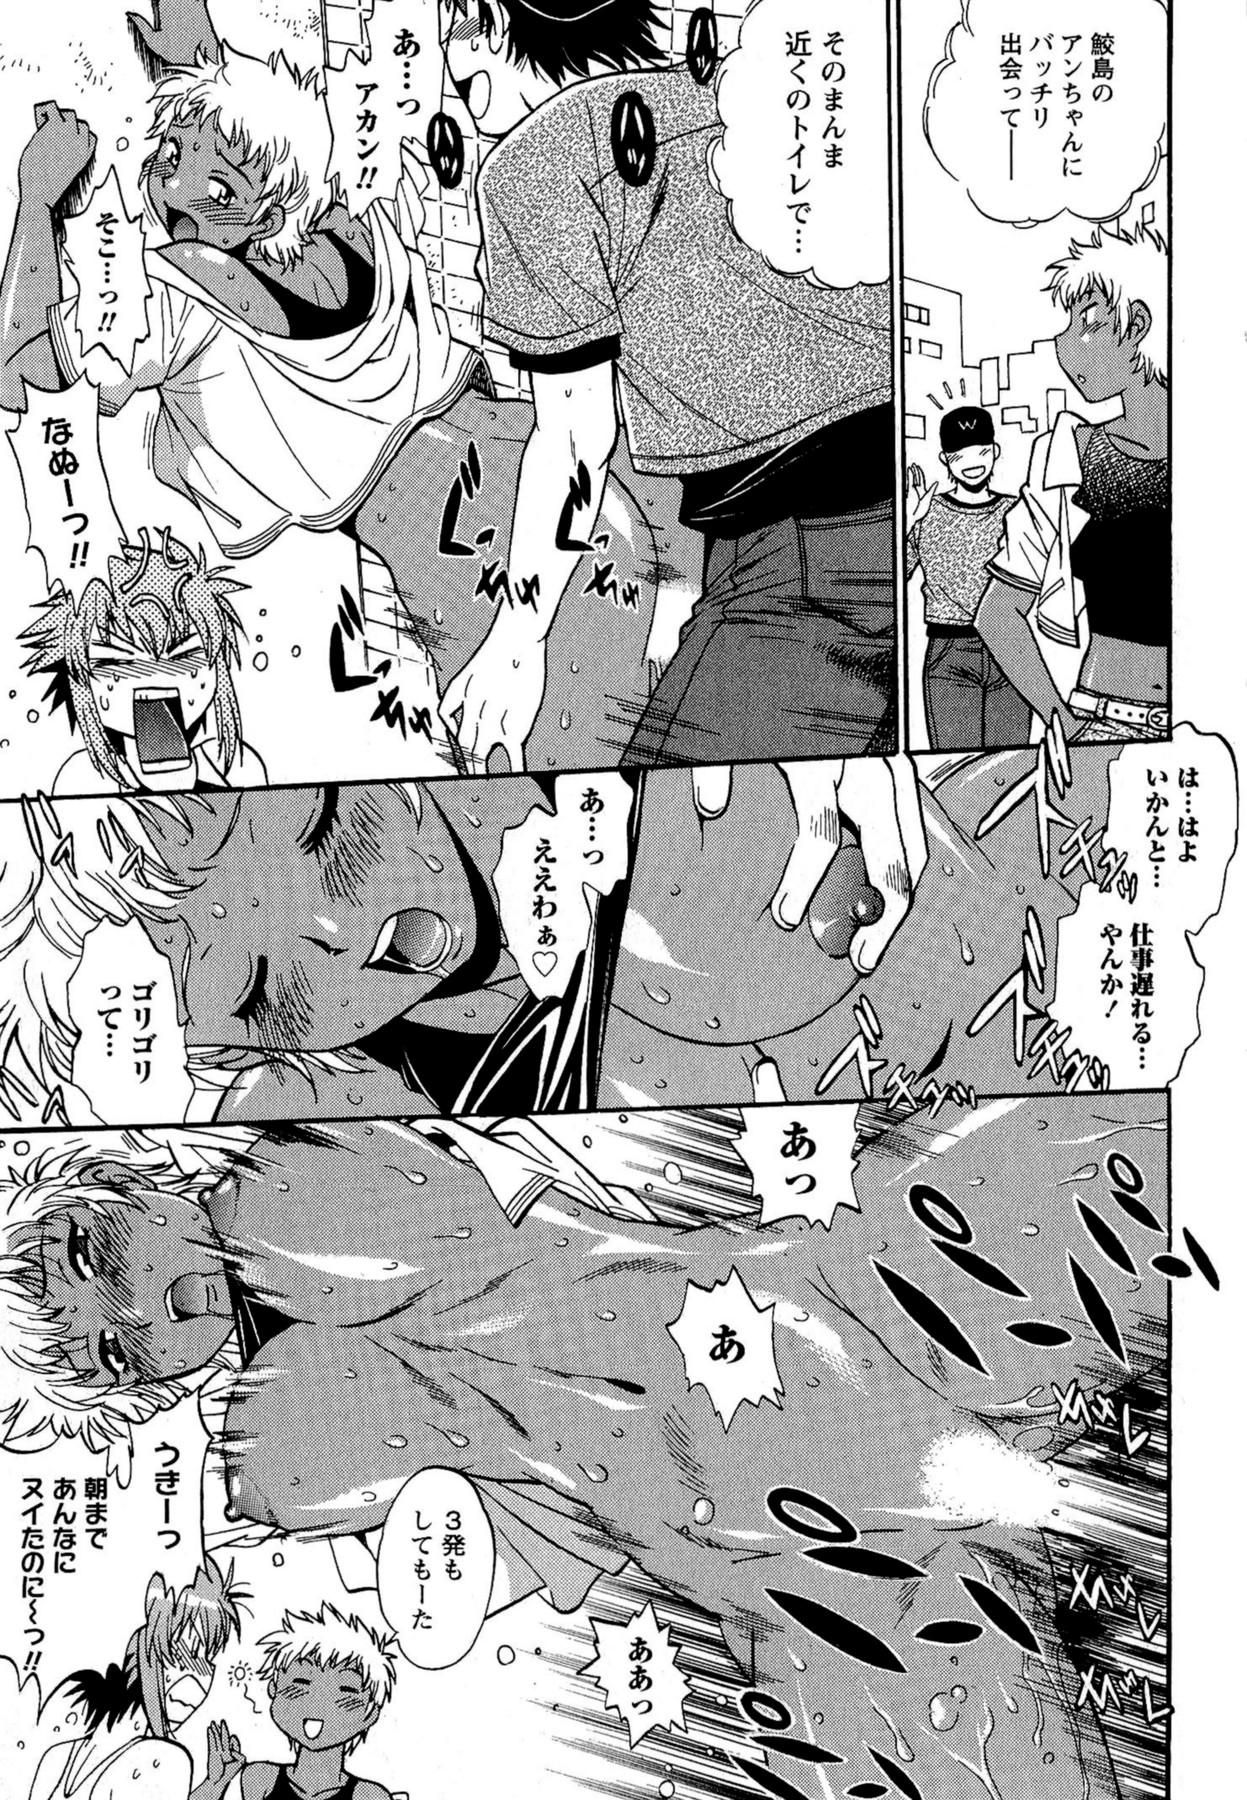 Kuikomi wo Naoshiteru Hima wa Nai! Vol. 2 210